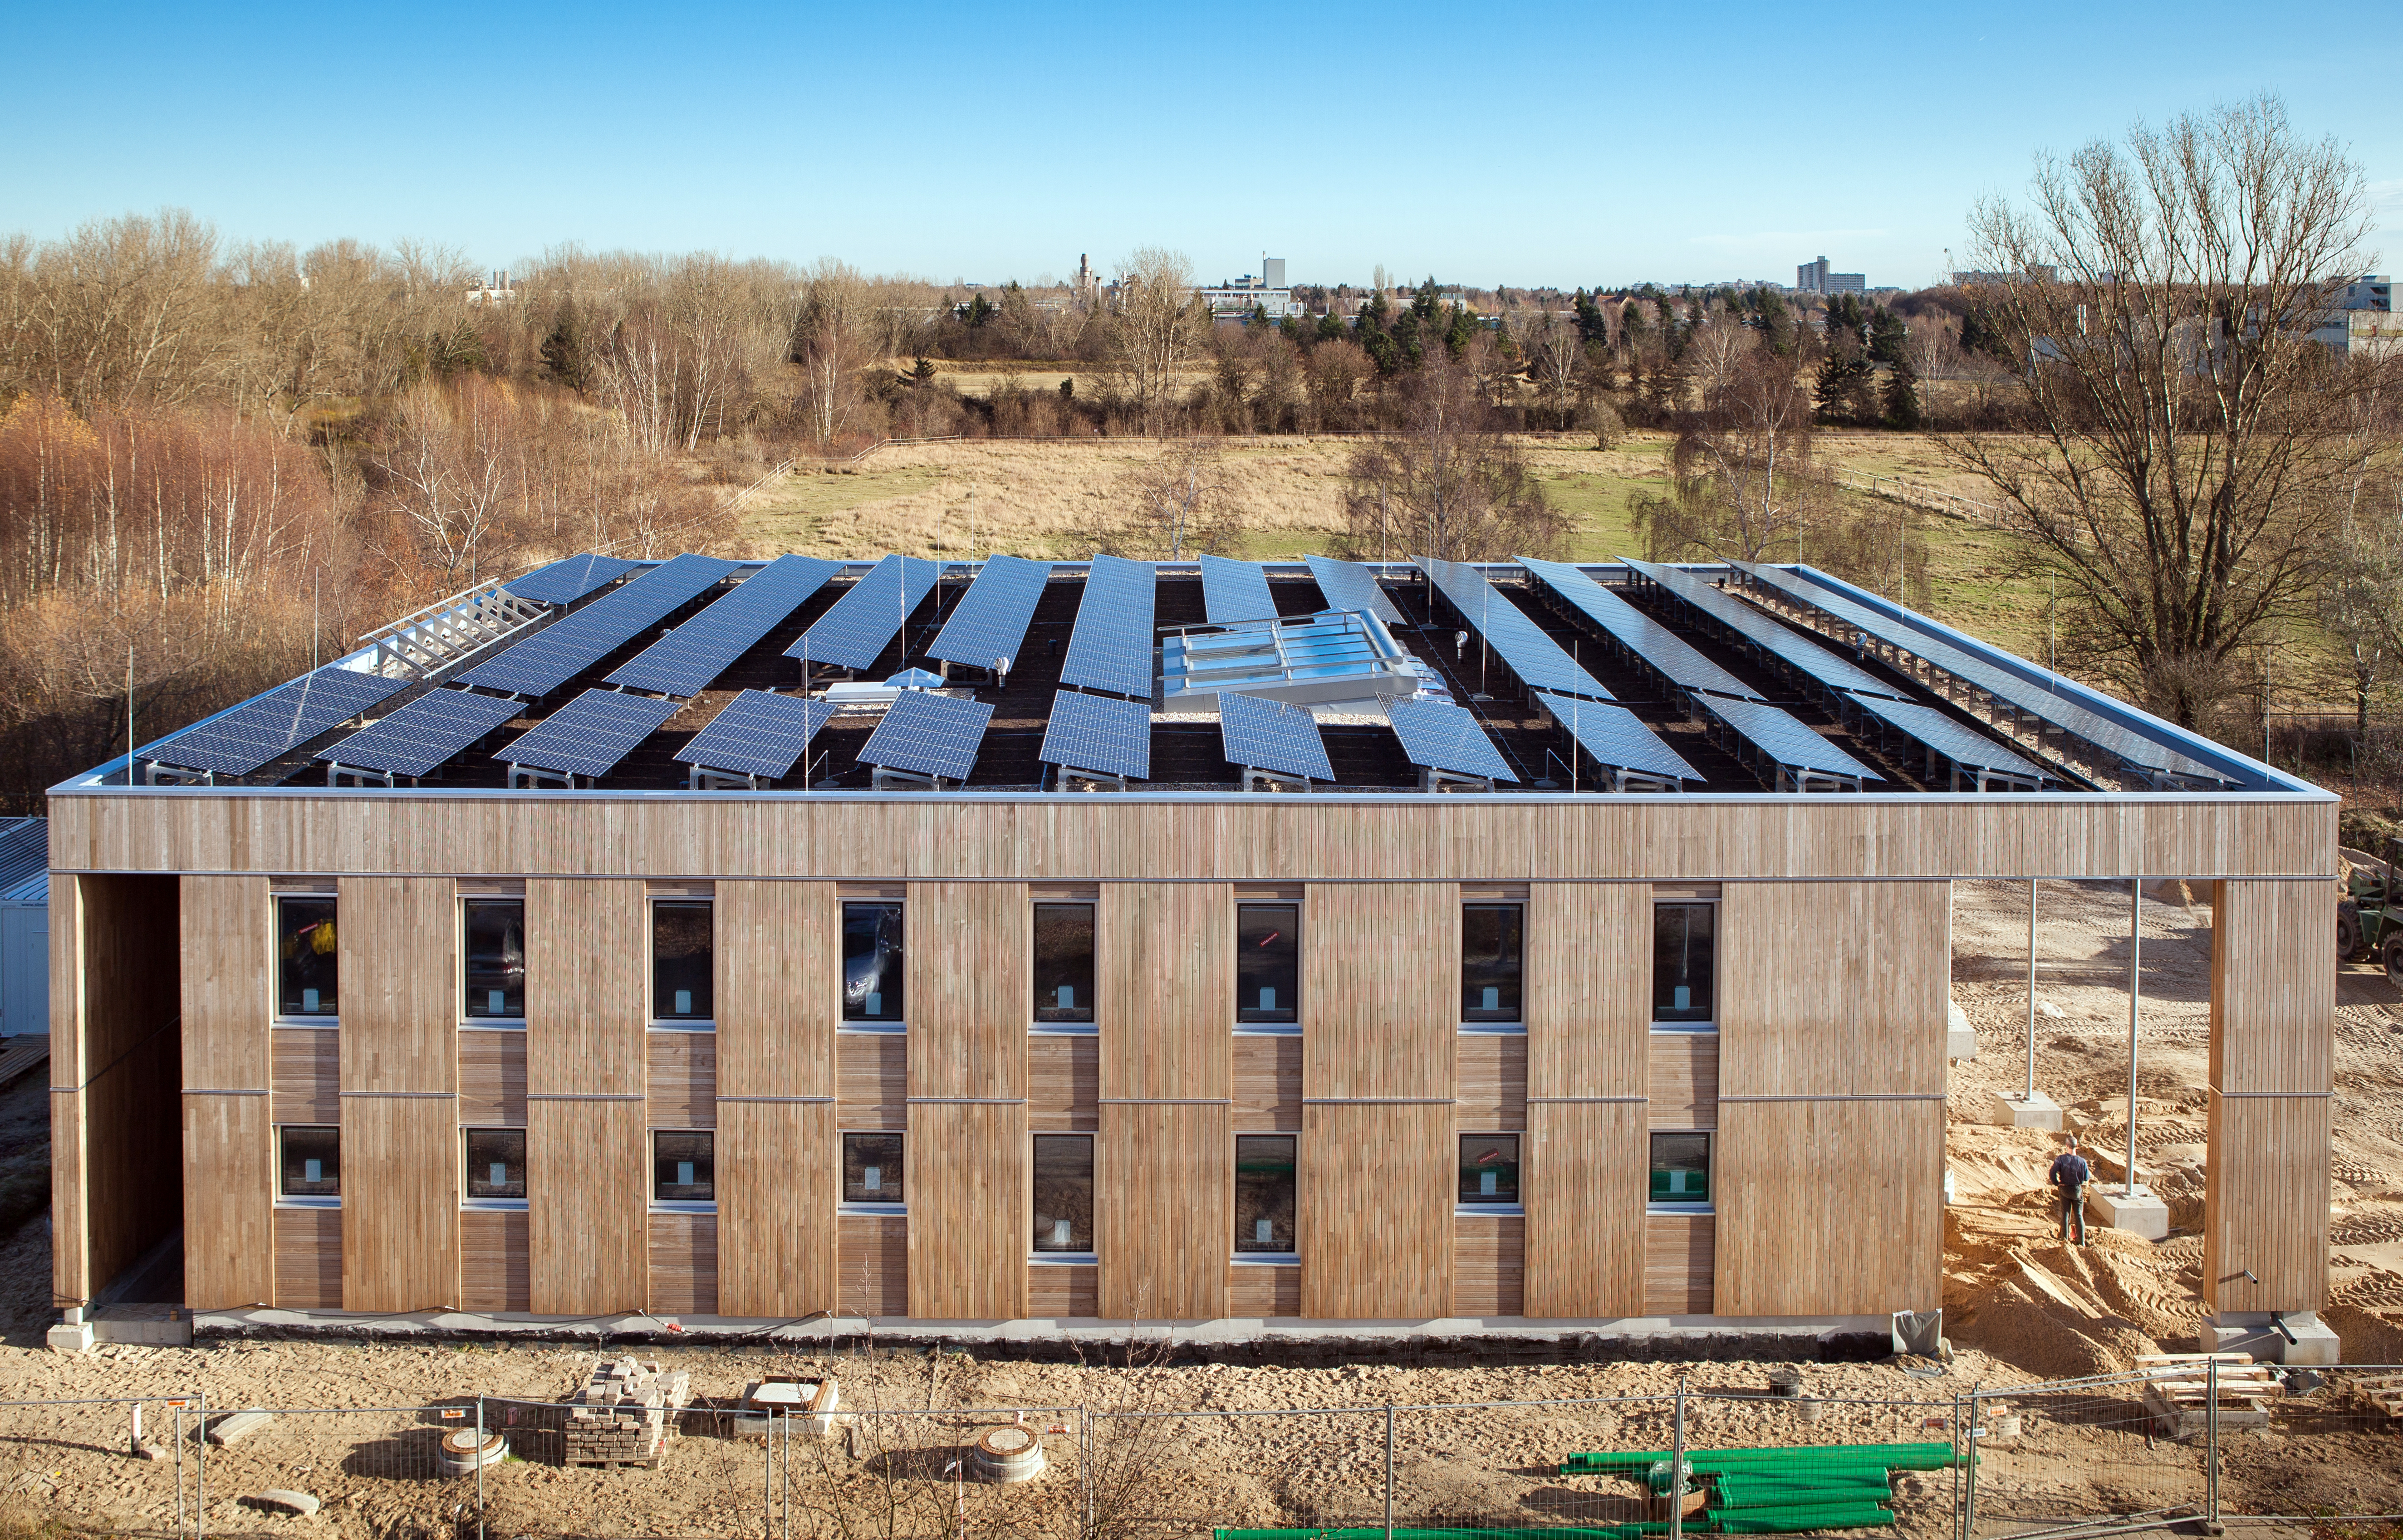 quadratischer zweigeschossiger Bau mit Holzfassade und Solarzellen auf dem Dach